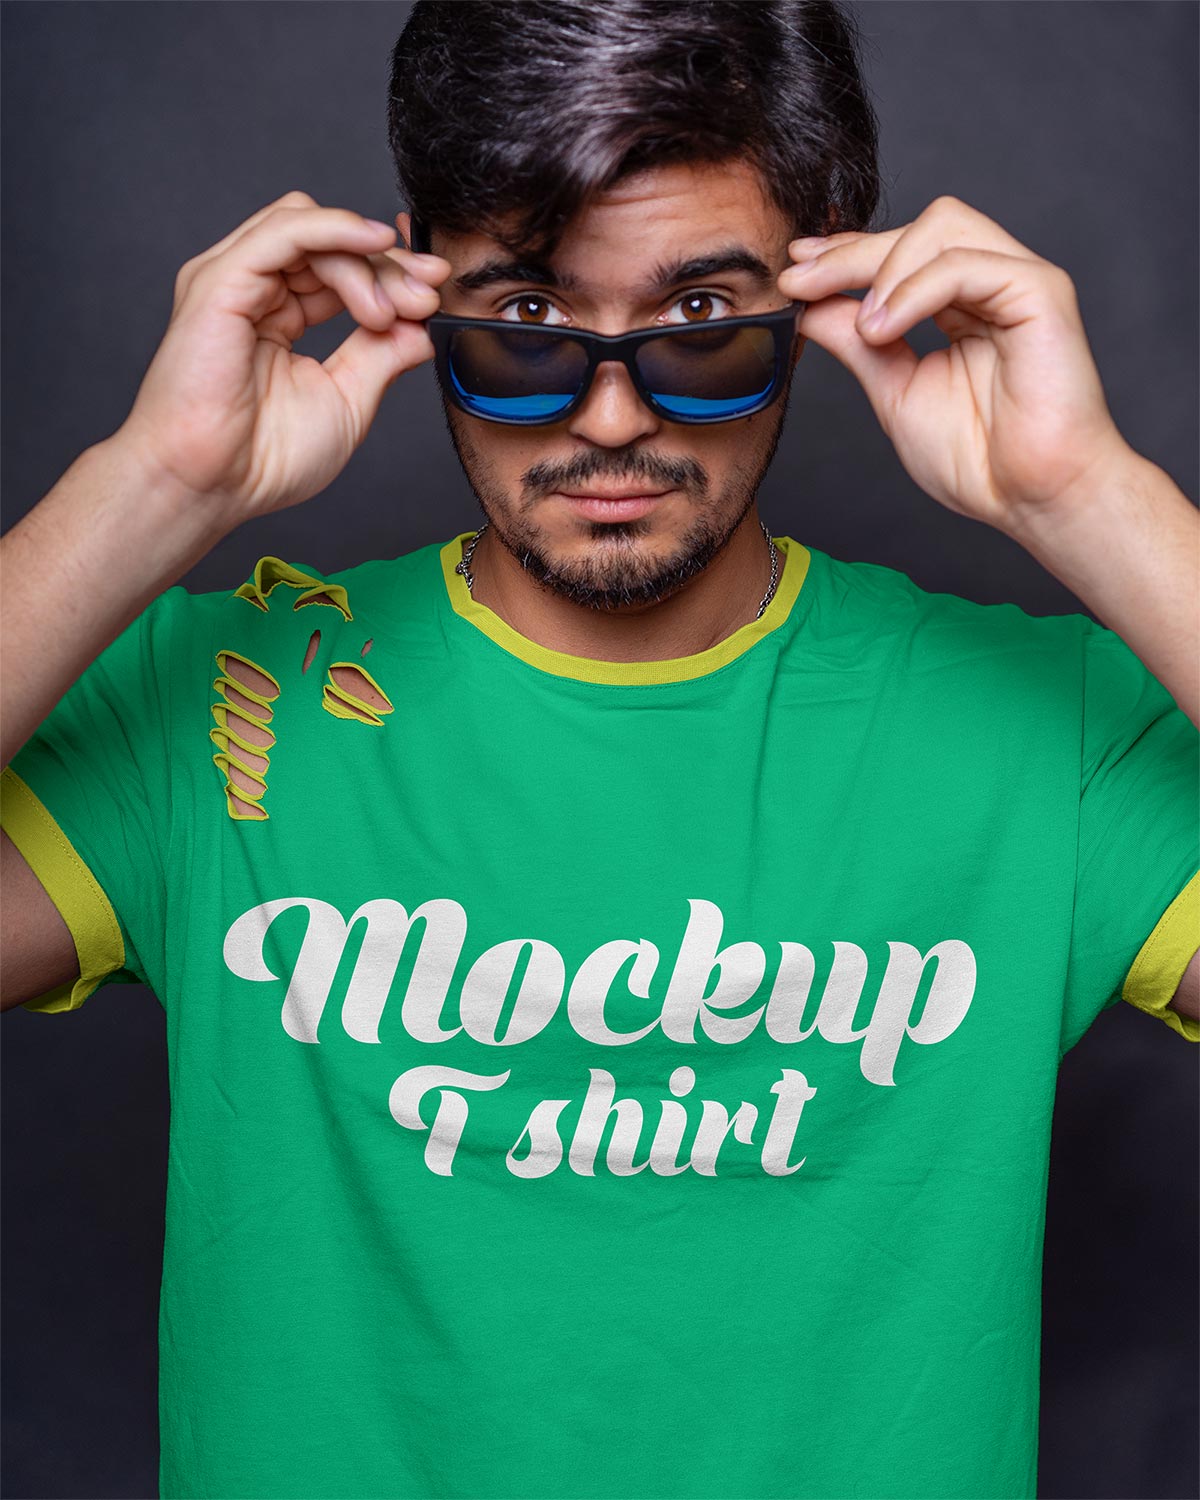 Download Free Men Ripped Short Sleeves T-Shirt Mockup PSD - Good Mockups